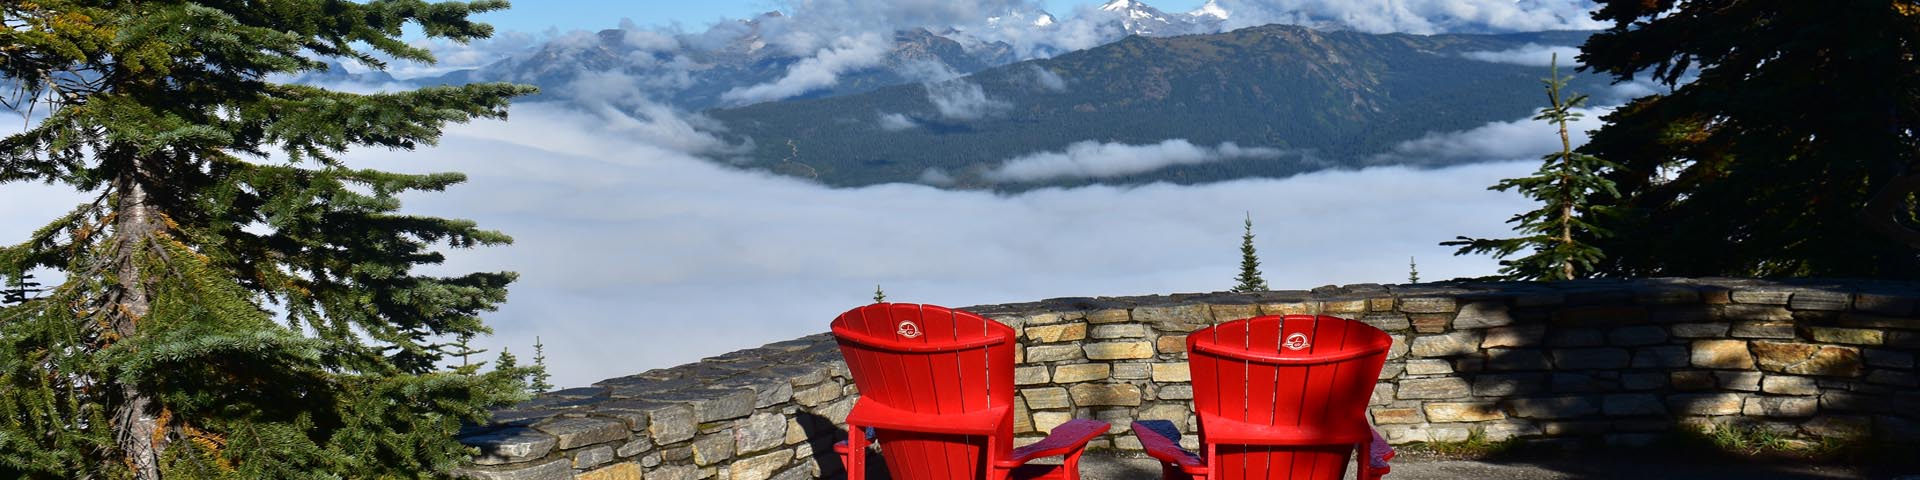 Deux chaises rouges sont assises derrière un mur de pierre à un point de vue sur la montagne.